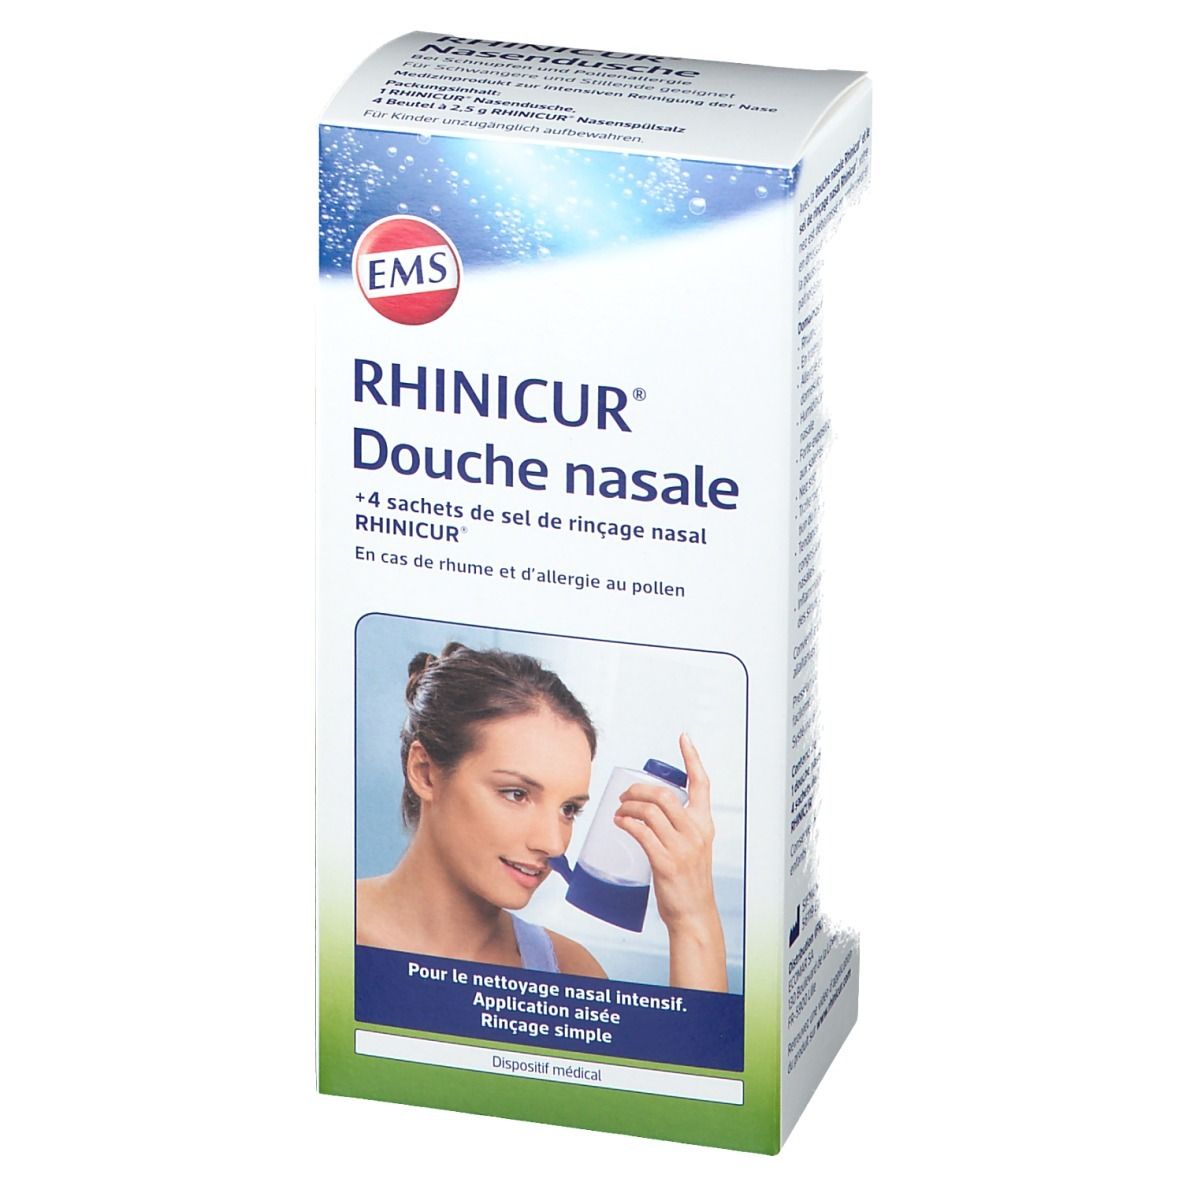 RHINICUR® Douche nasale + 4 sachets  de sel de rinçage nasal